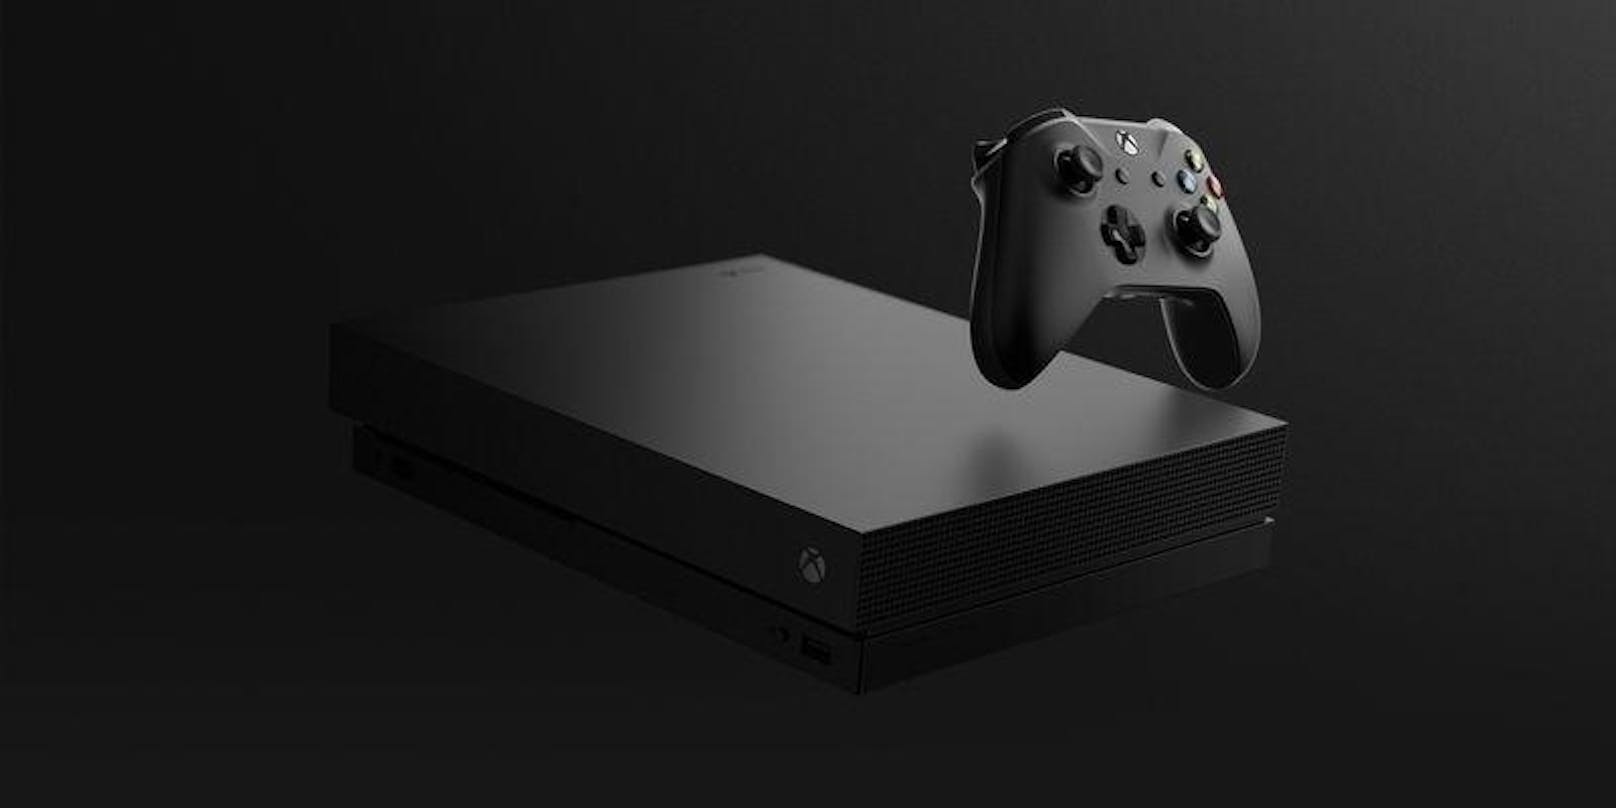 Die Xbox One X kann Spiele in 4K-Auflösung und in UltraHD / HDR abspielen, bleibt aber kompatibel zur kompletten Xbox-One-Produktfamilie.